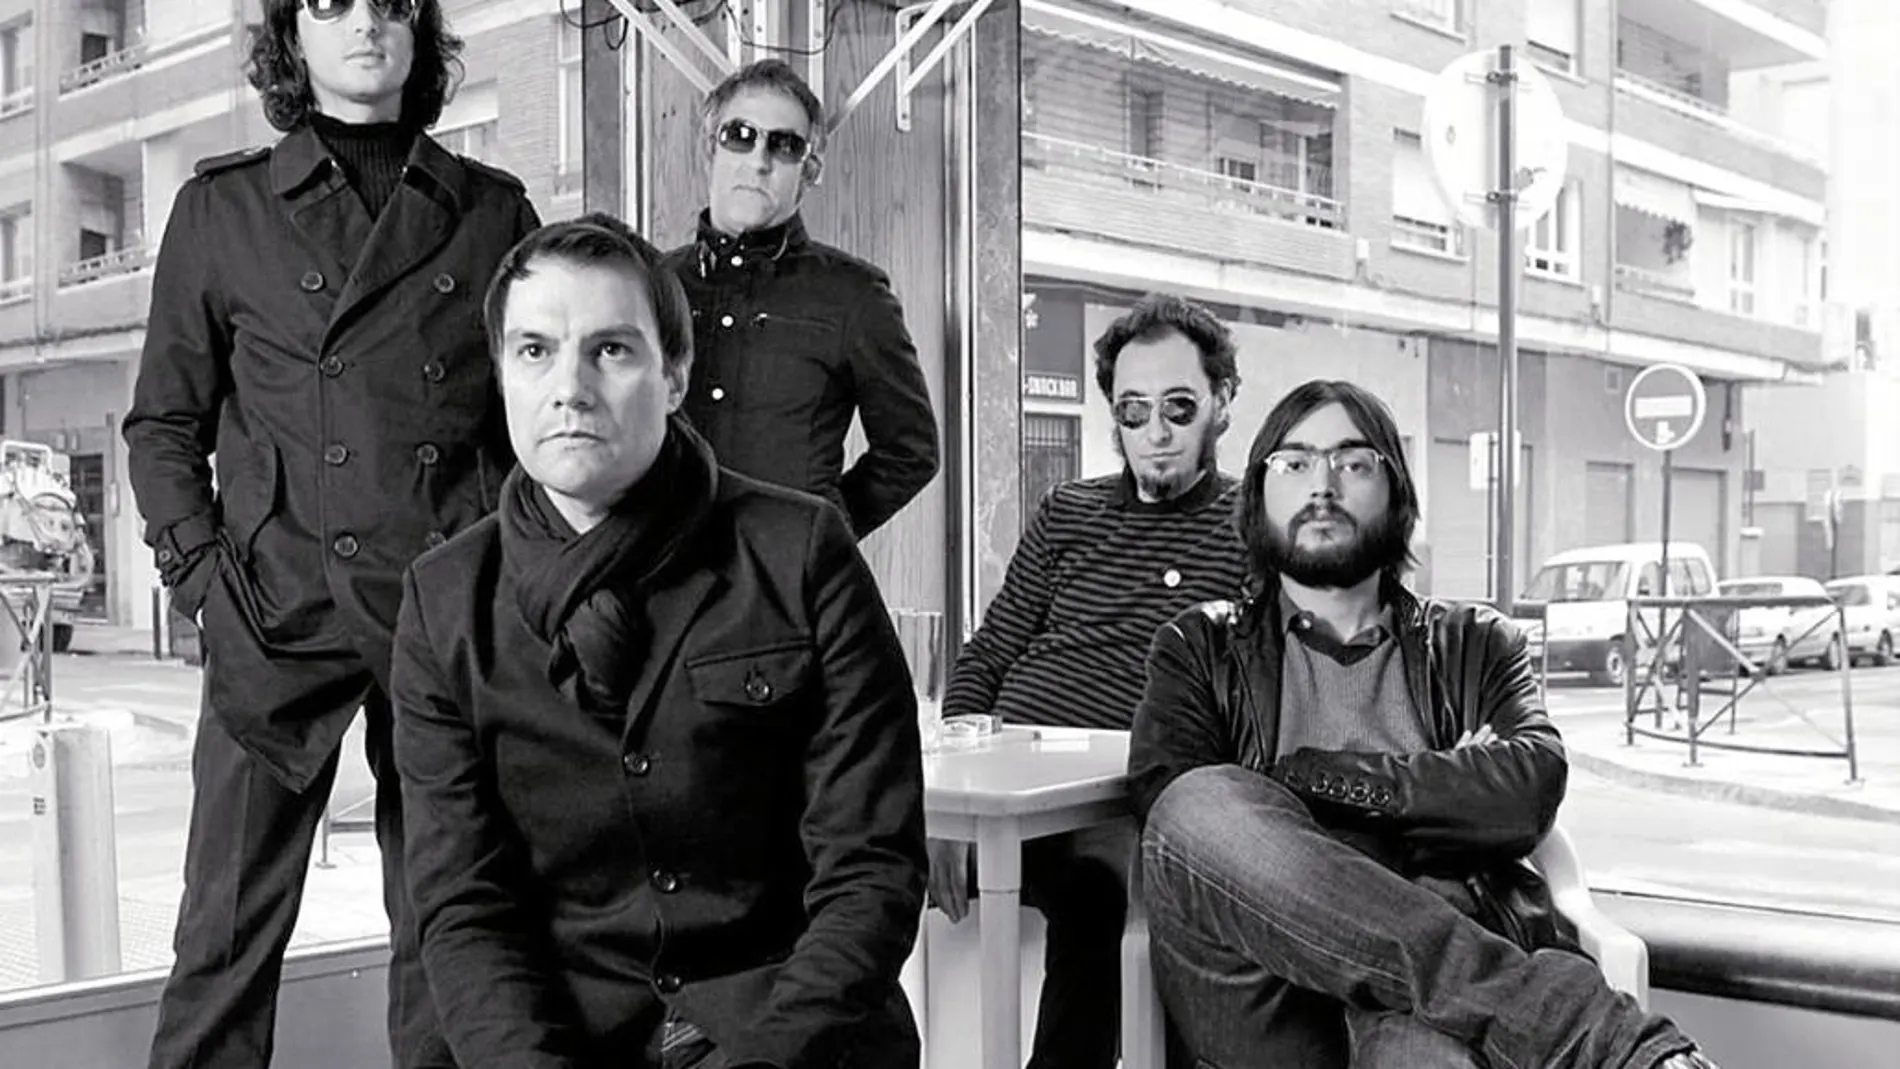 Nacieron en Úbeda (Jaén) hace más de diez años y el quinteto ya se ha convertido en el grupo indie español más influyente